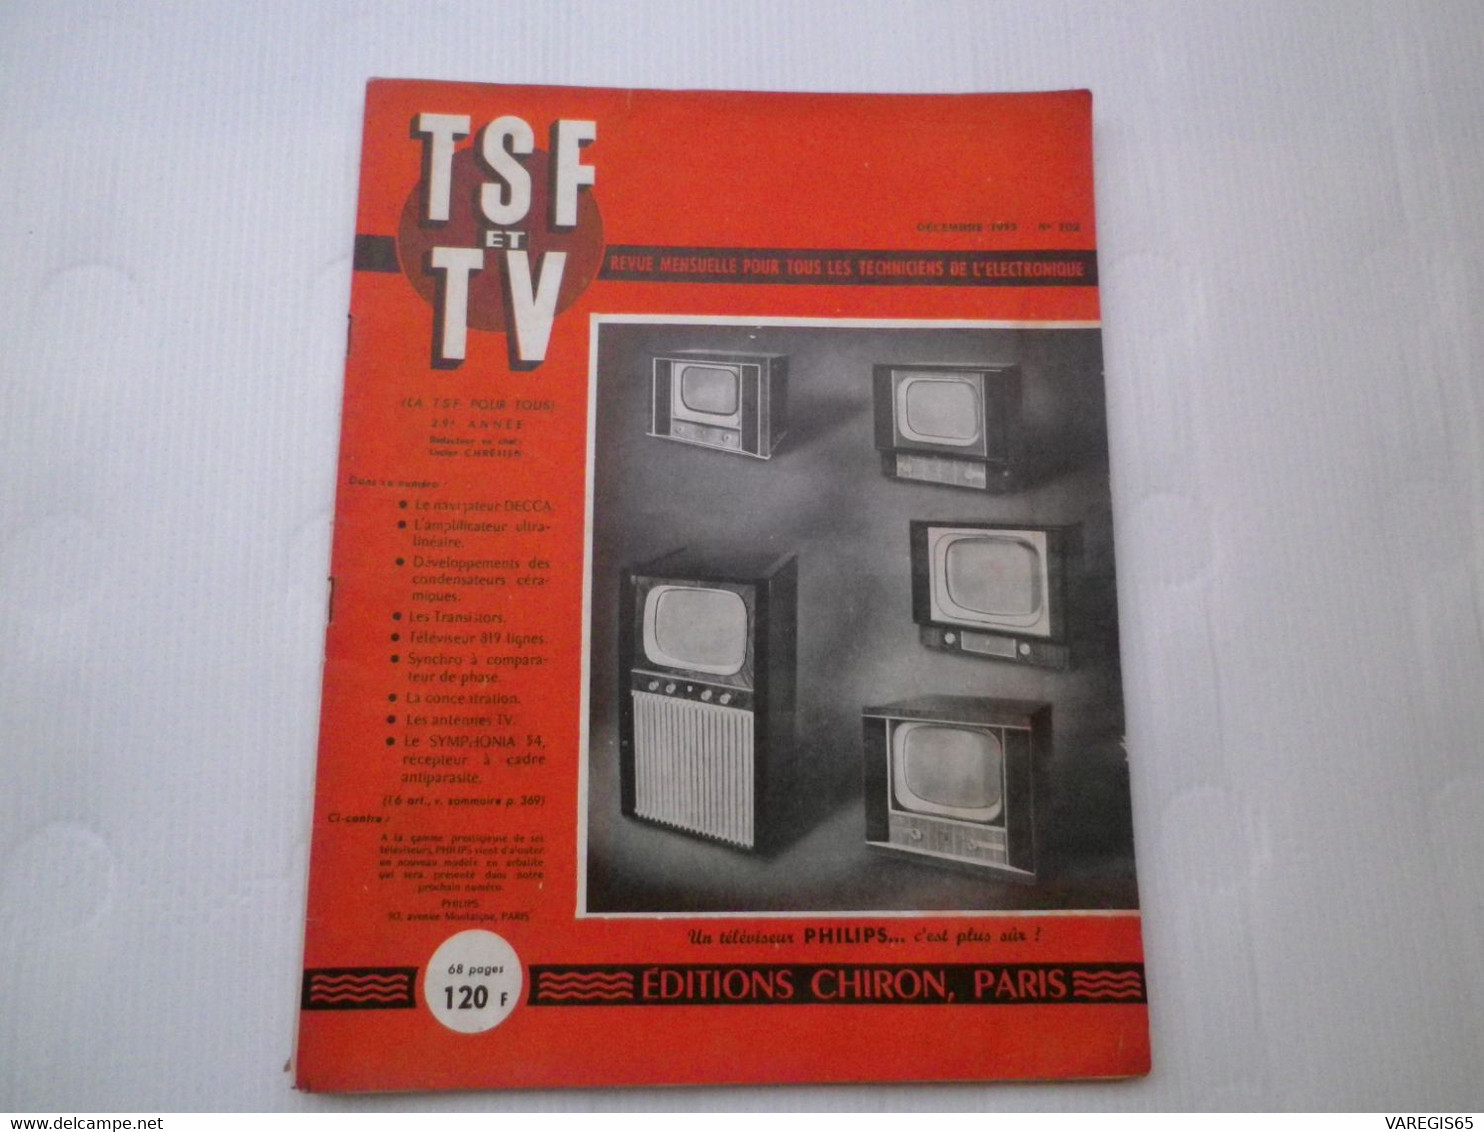 TSF ET TV - N° 302 DECEMBRE 1953 - REVUE MENSUELLE - ETUDE DU SYMPHONIA 54 ET DU RECEPTEUR DE TELEVISION OCEANIC 819 - Audio-video